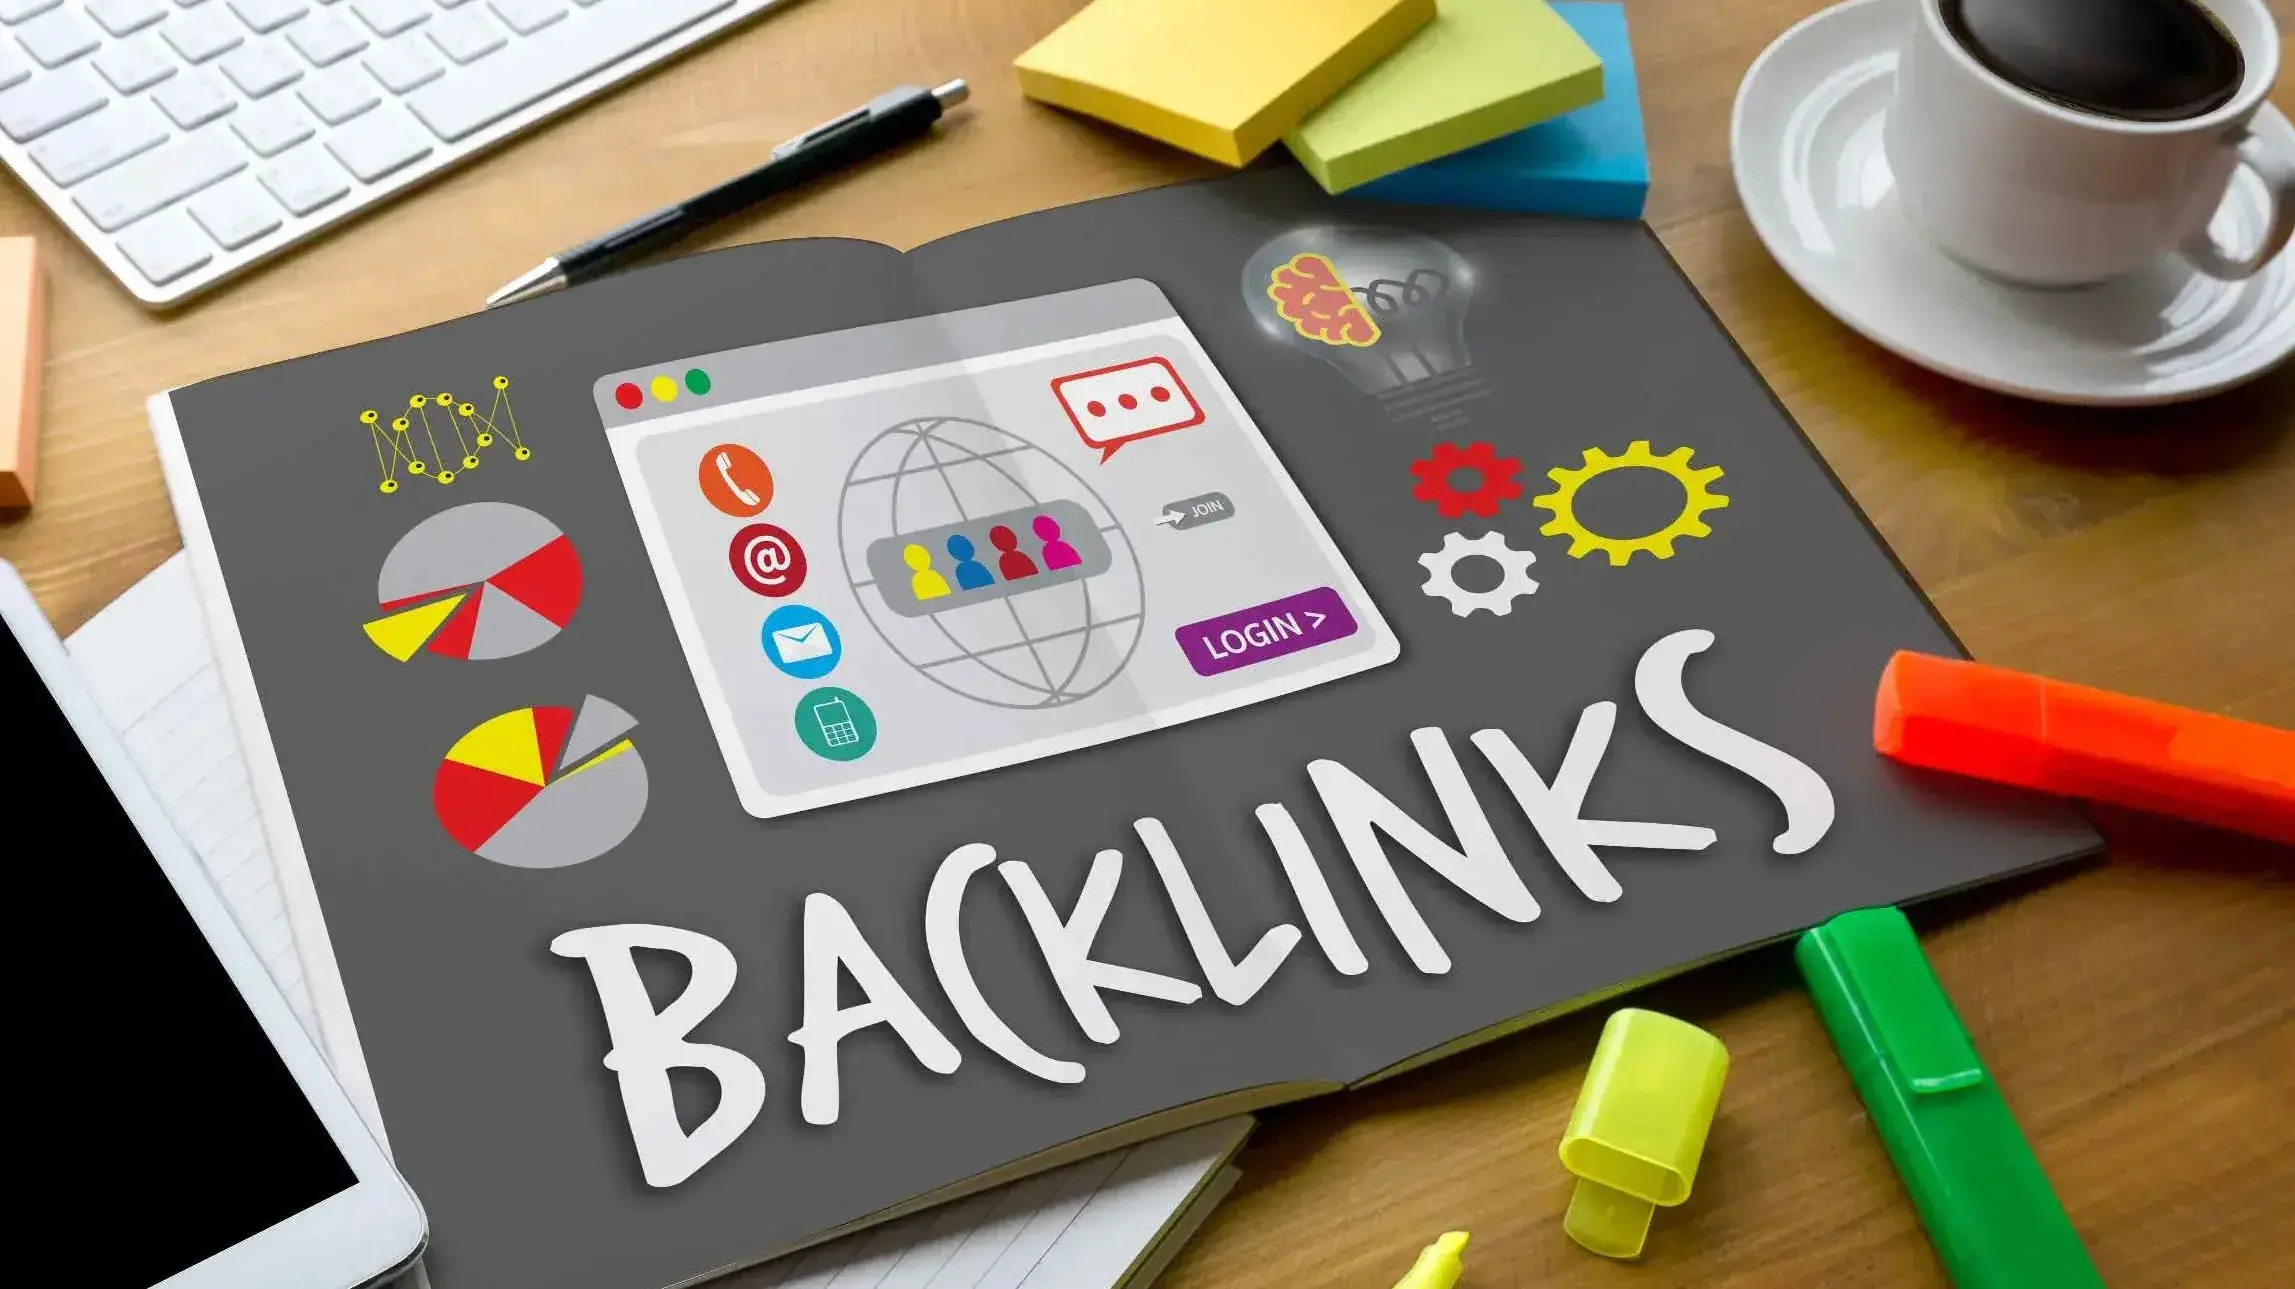 Backlink Strategies